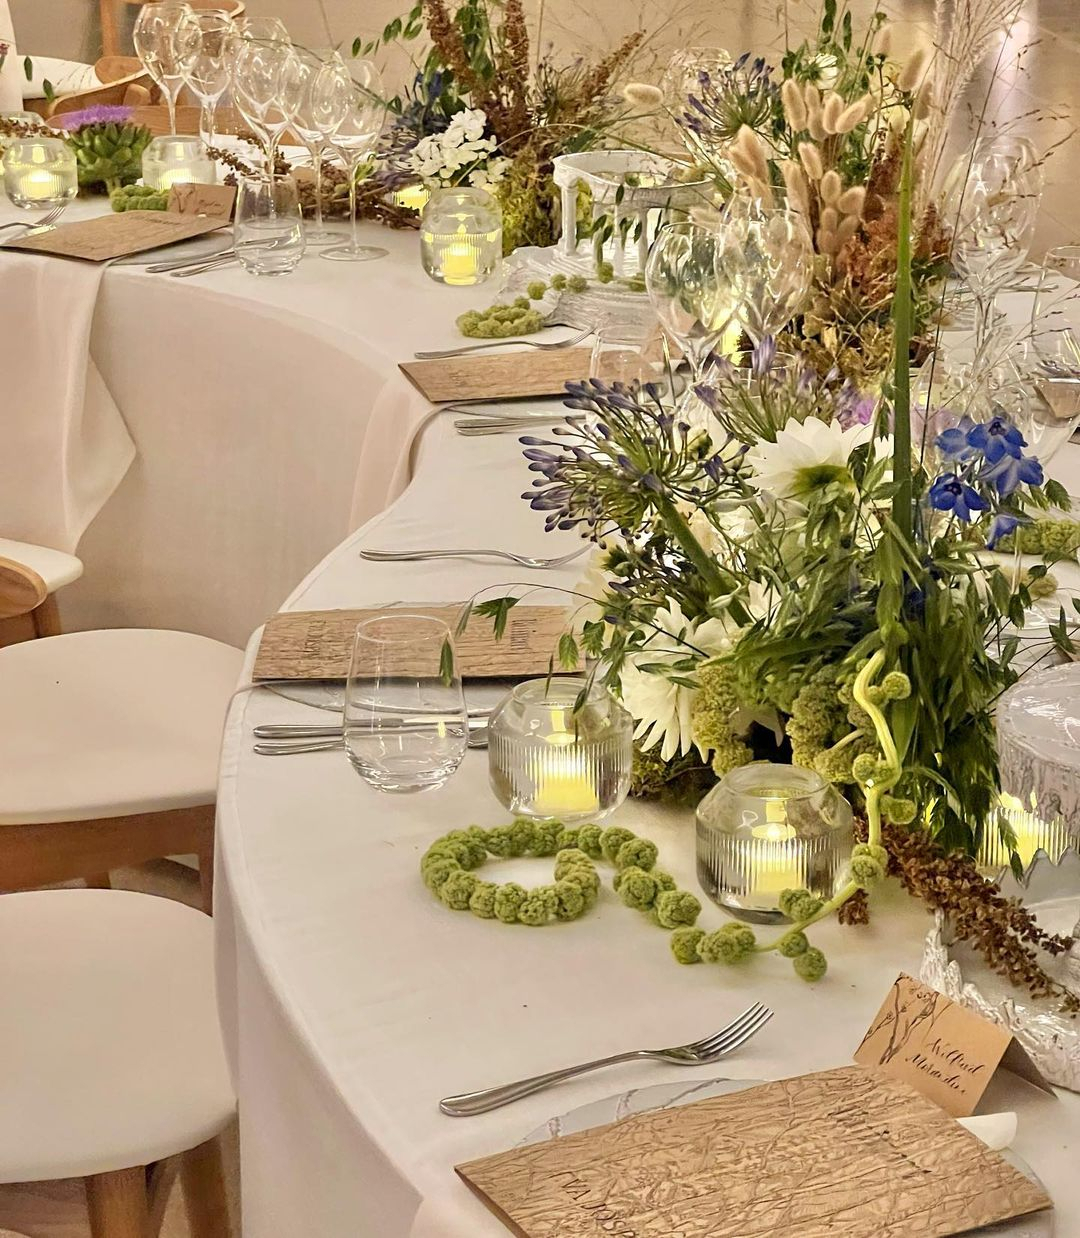 Wedding Florist in the UK | Wedding Decorators, Flower Arrangements in ...